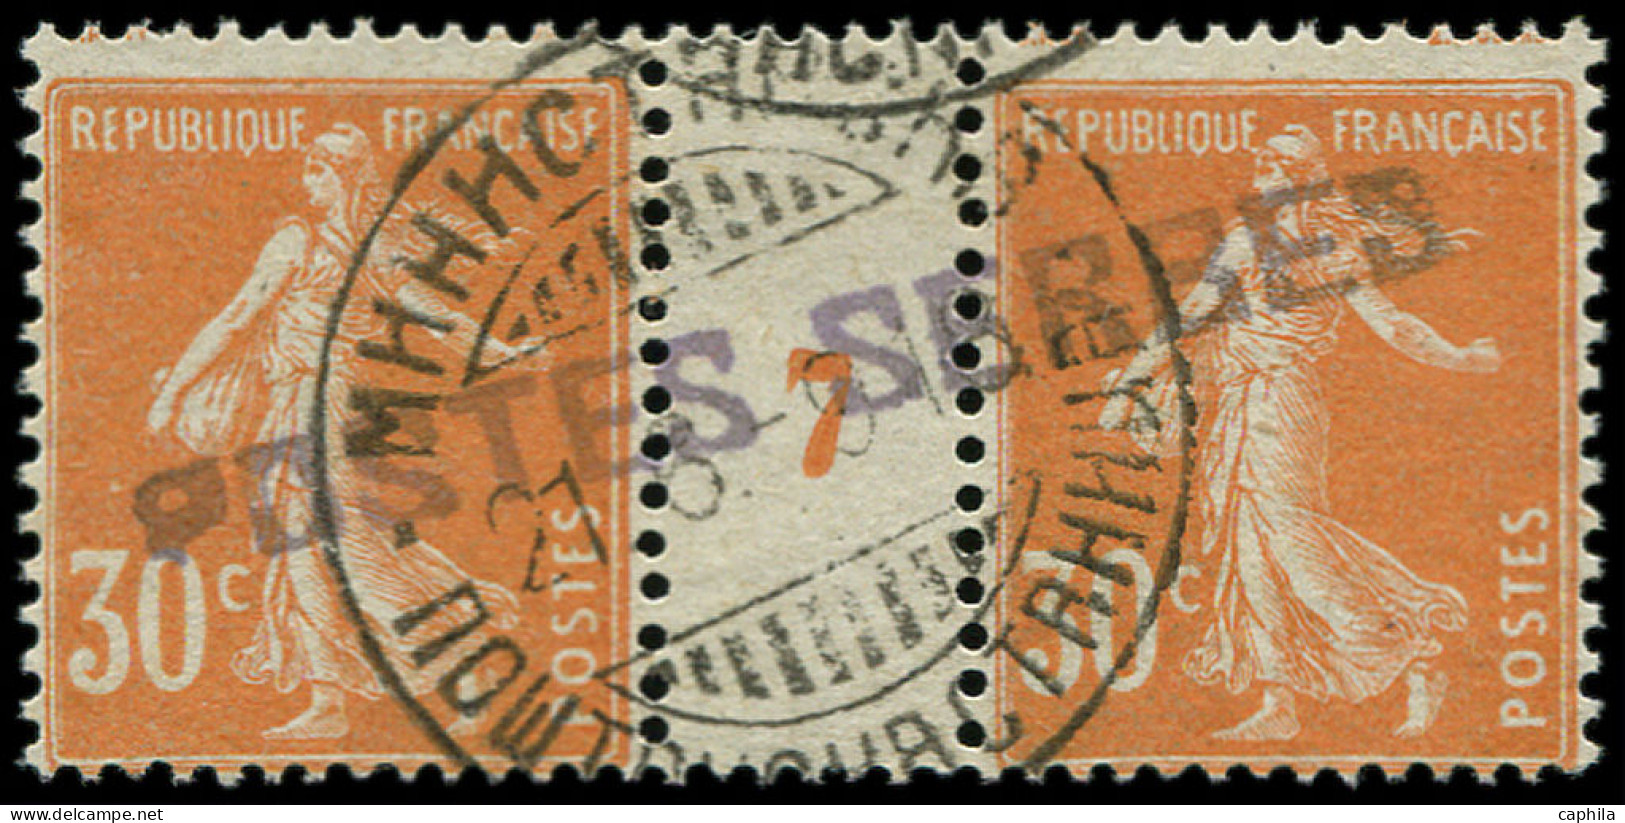 O FRANCE - Postes Serbes - 9, Paire Millésime "7", Papier Blanc: 30c. Semeuse Orange - War Stamps